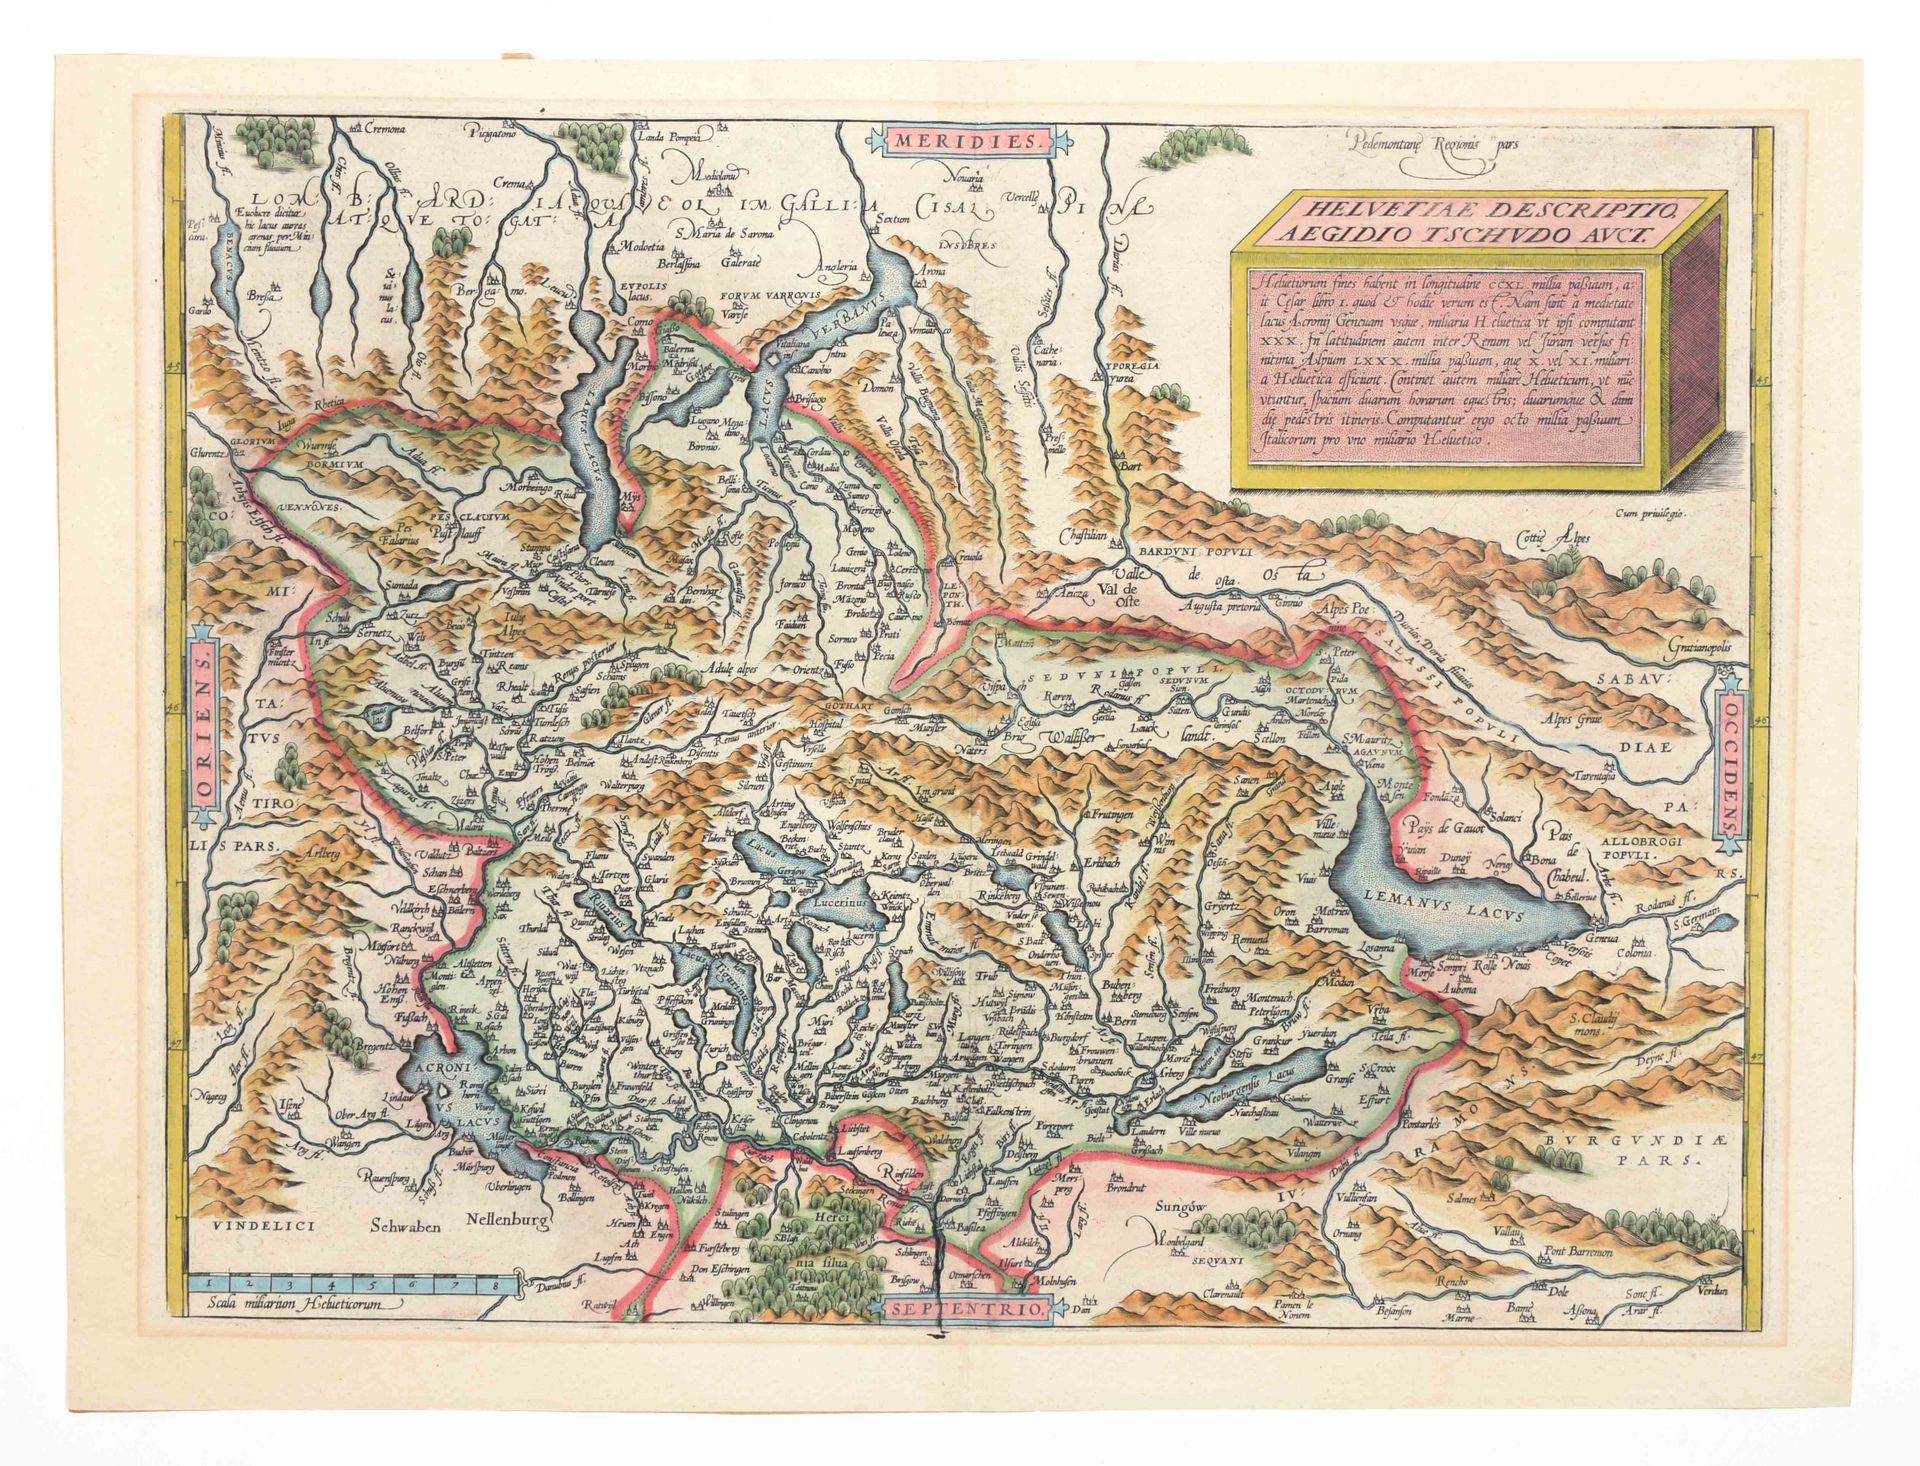 [SWITZERLAND] Helvetiae descriptio Aegidio Tschudo Auct

Mapa manuscrito (34,5 x&hellip;